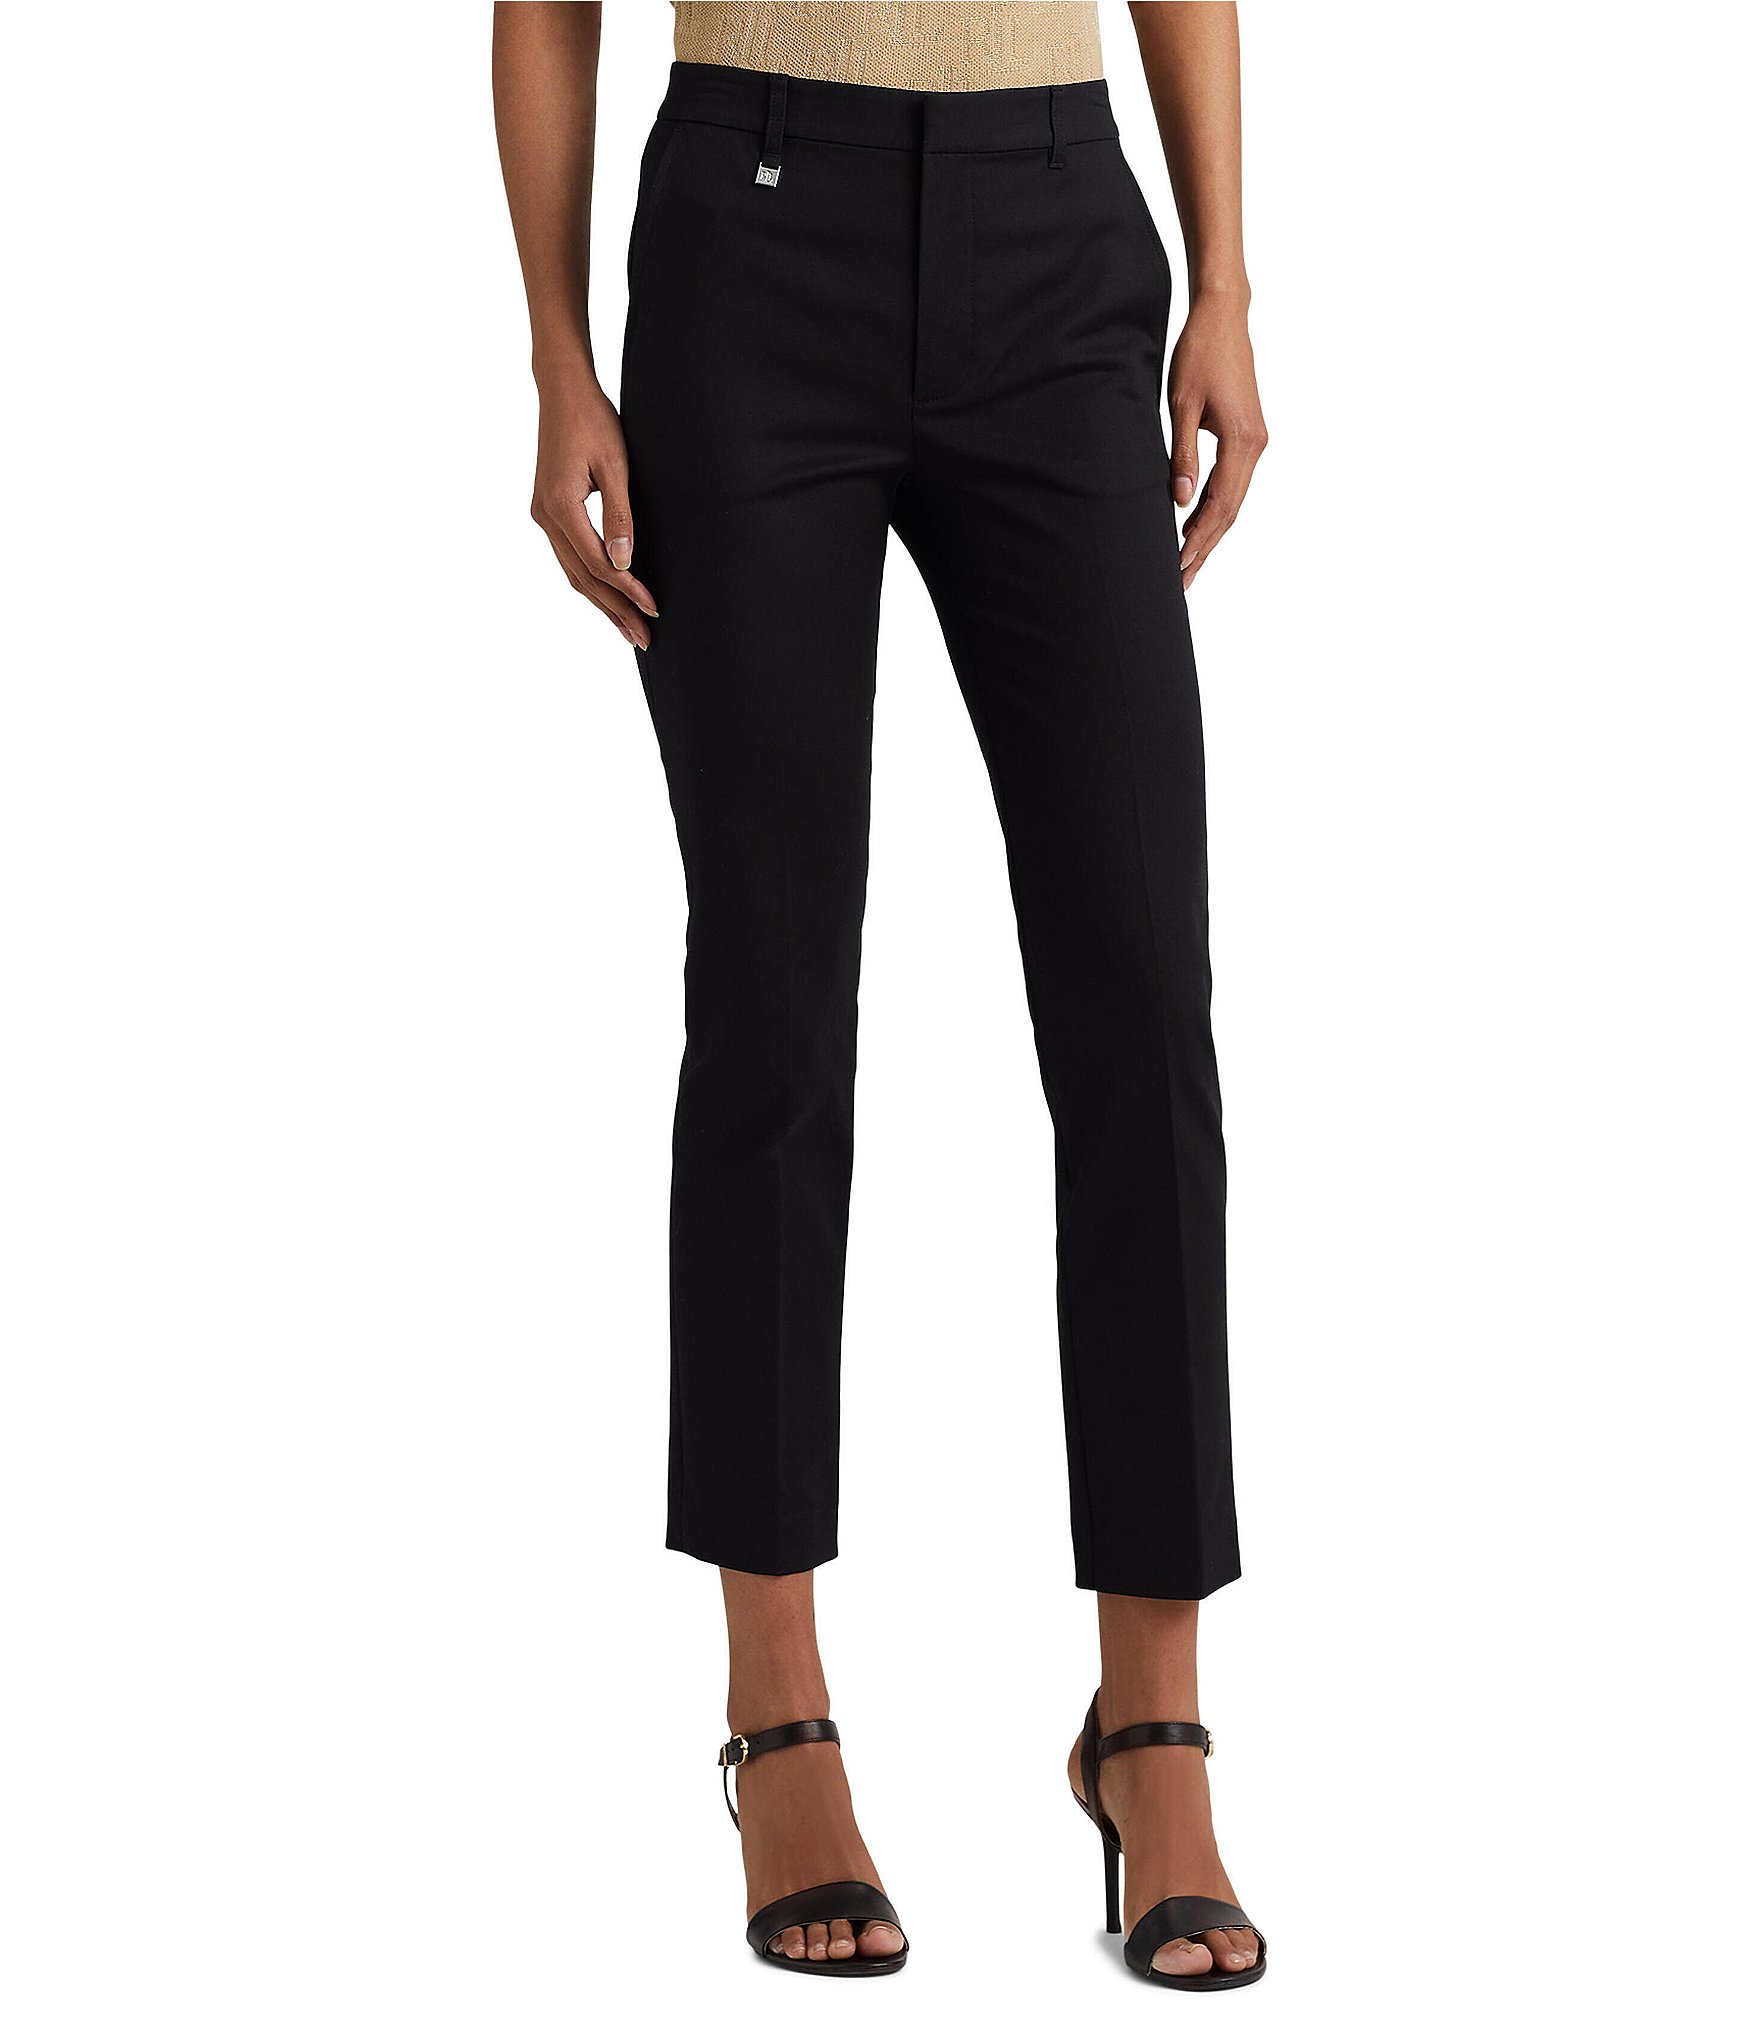 Lauren Ralph Lauren Khaki Cargo Pants Womens 2 Black Adjustable Ankle 28x25